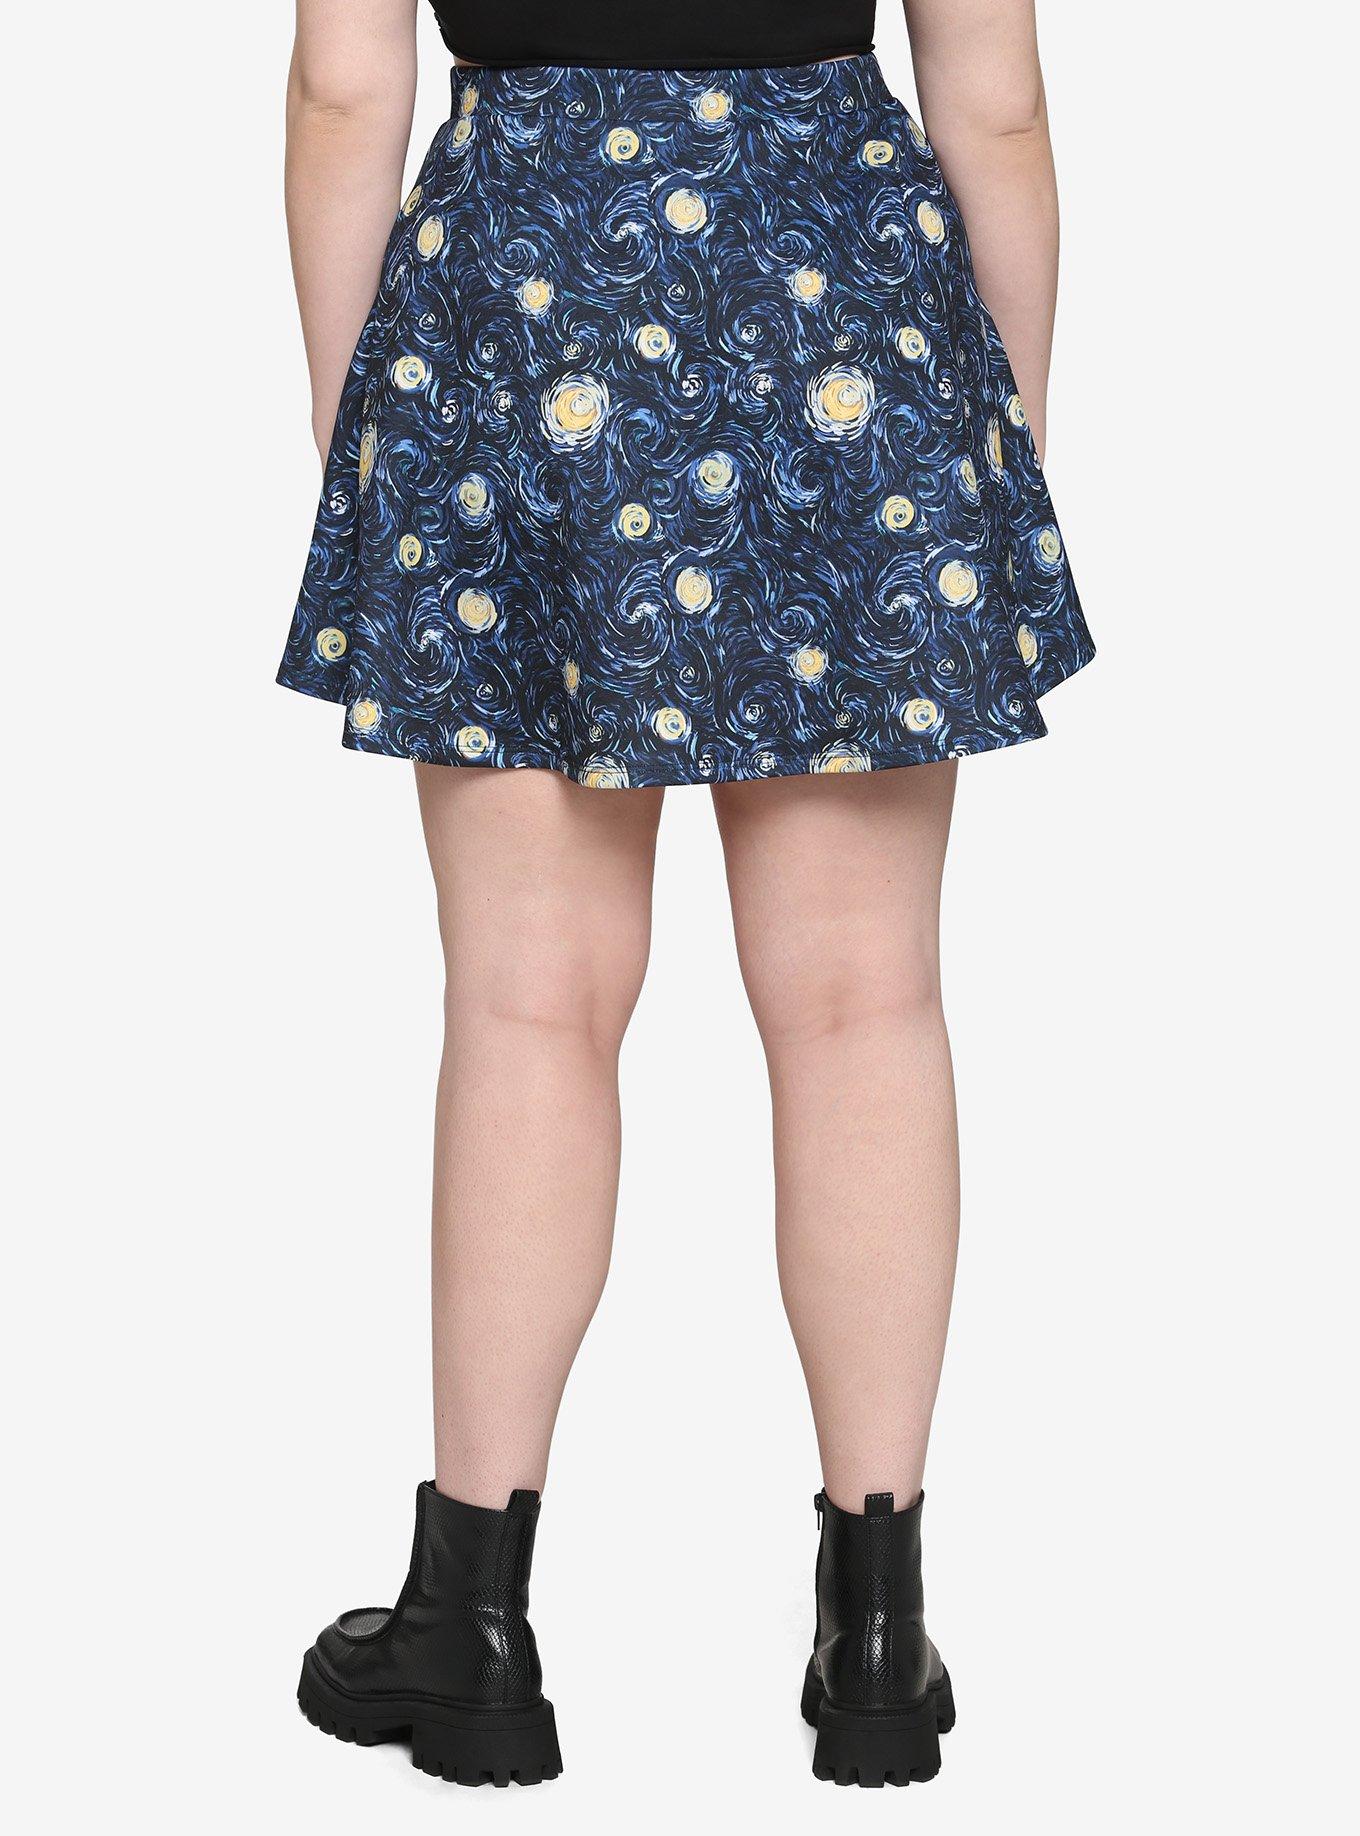 Starry Night O-Ring Zipper Skirt Plus Size, BLUE, alternate